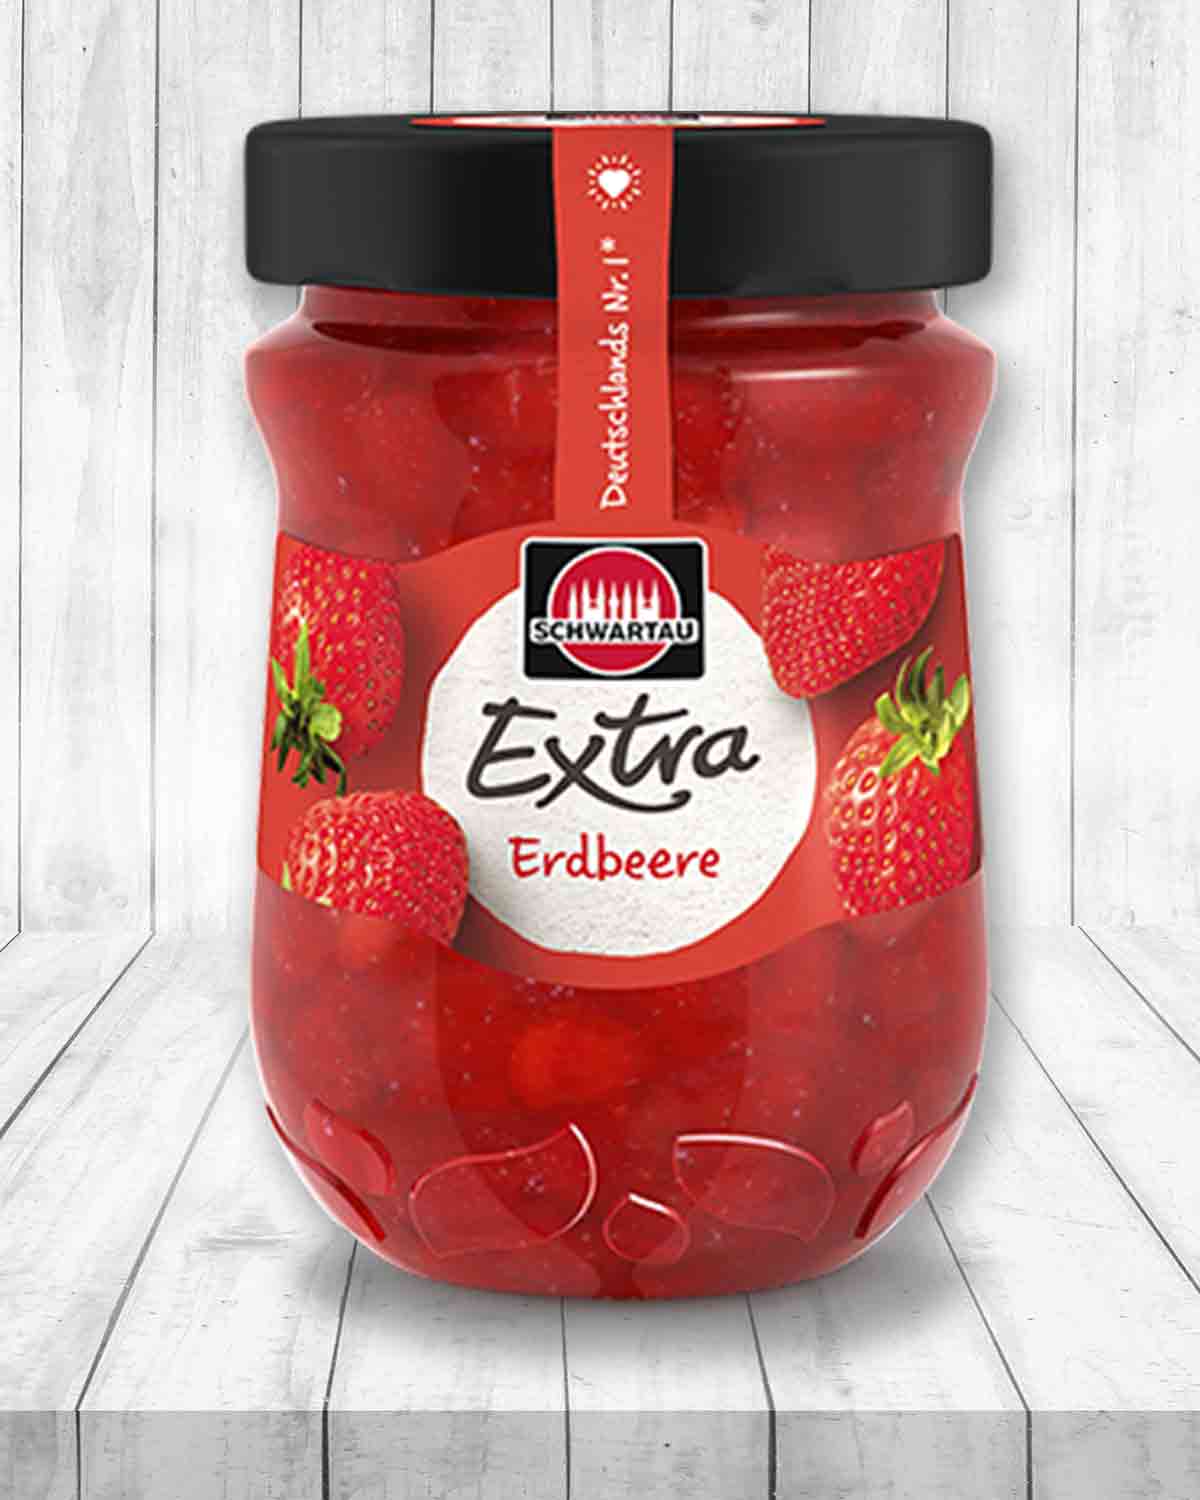 Schwartau Extra Erdbeermarmelade